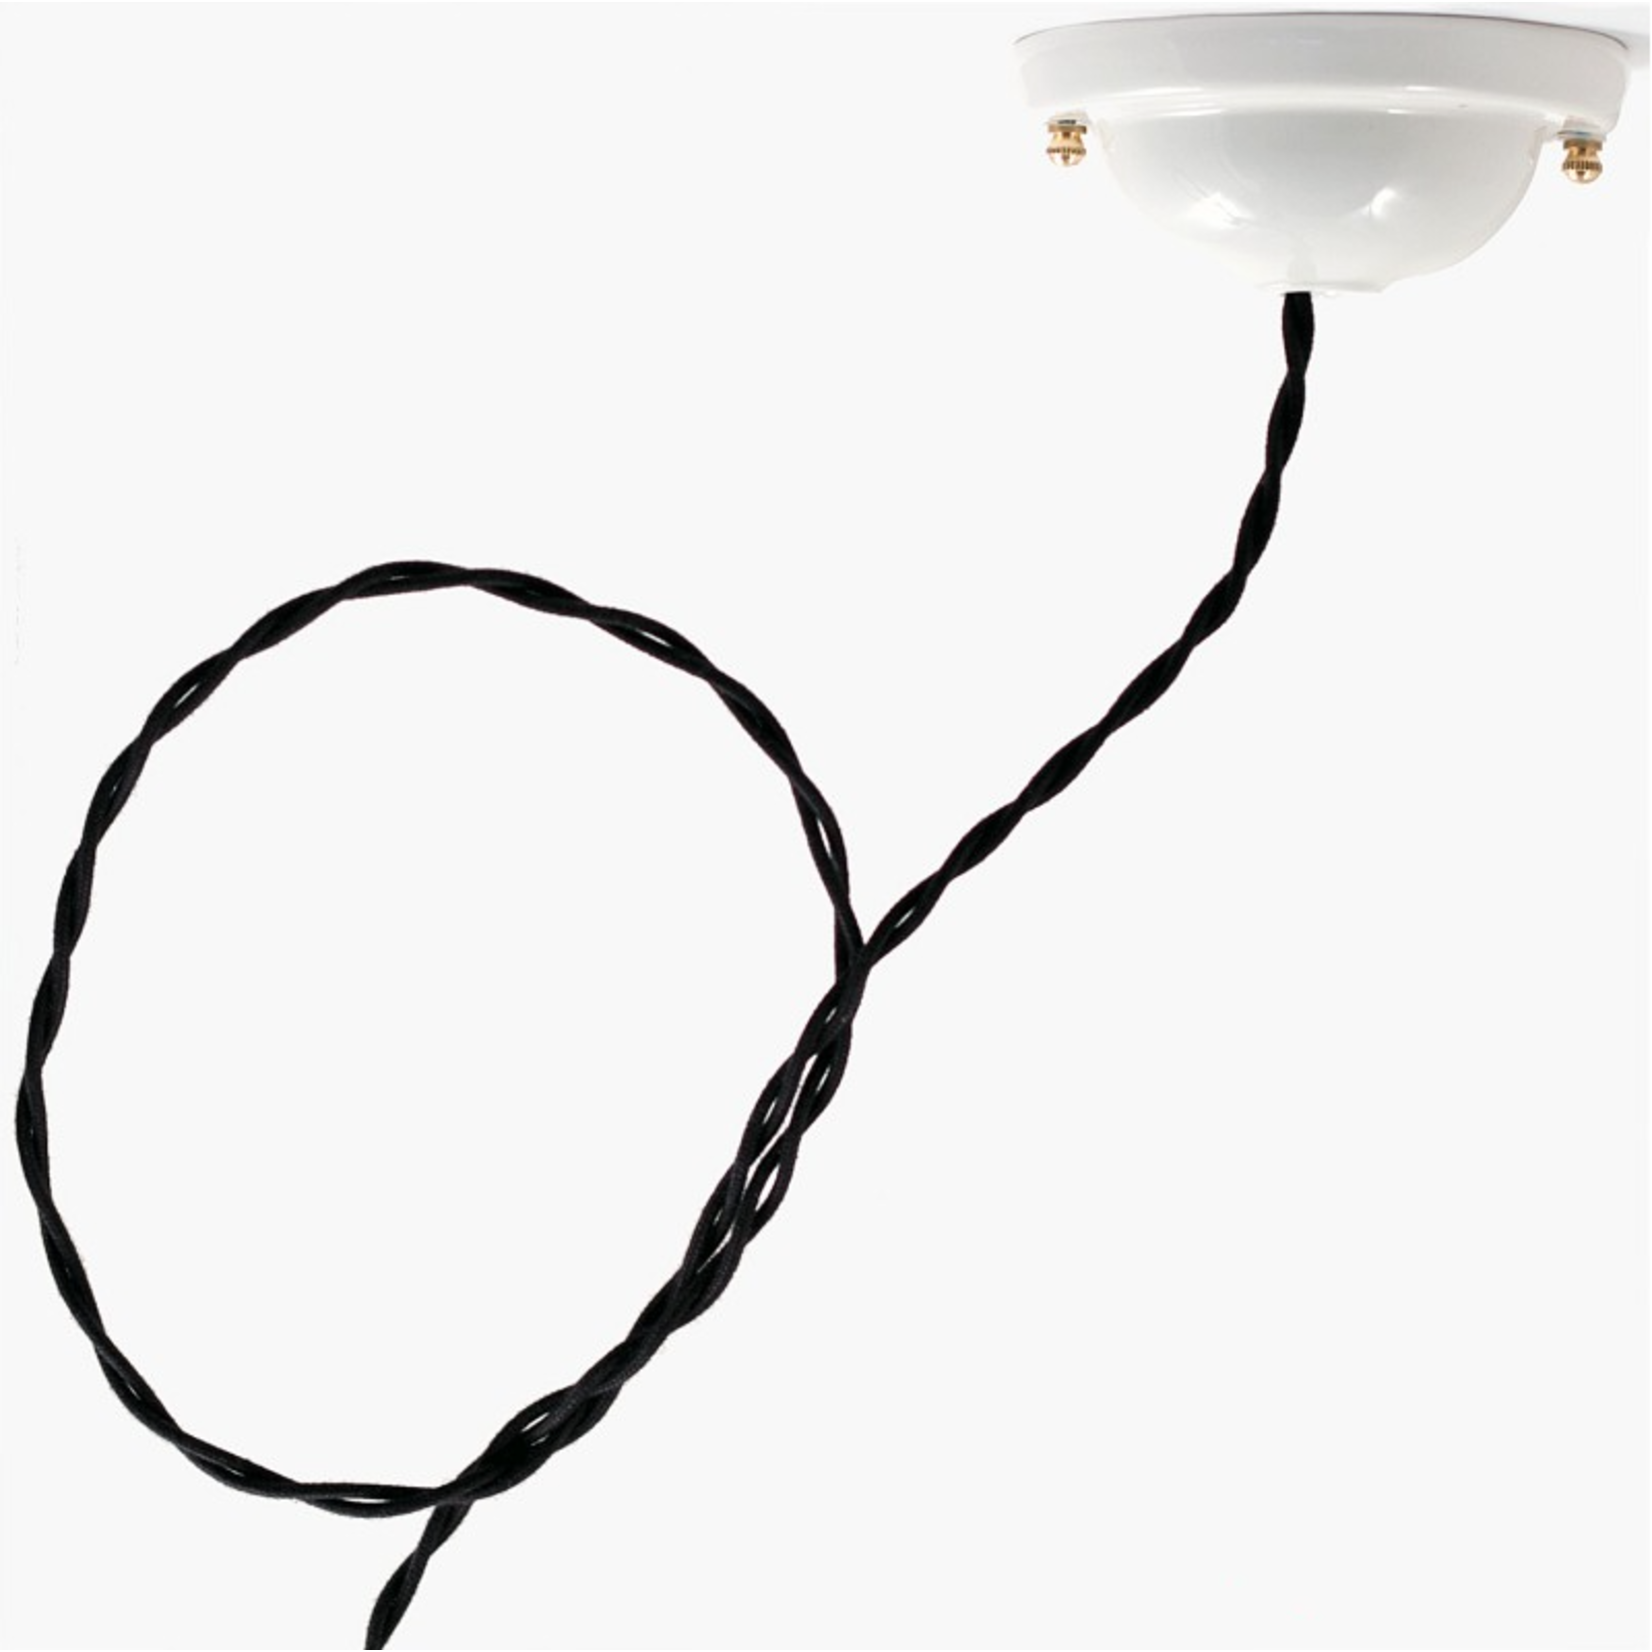 CCIT Per Metre - Twisted Black Cotton Electric Cable 3 Core Flex: 3x0.75cm Diameter